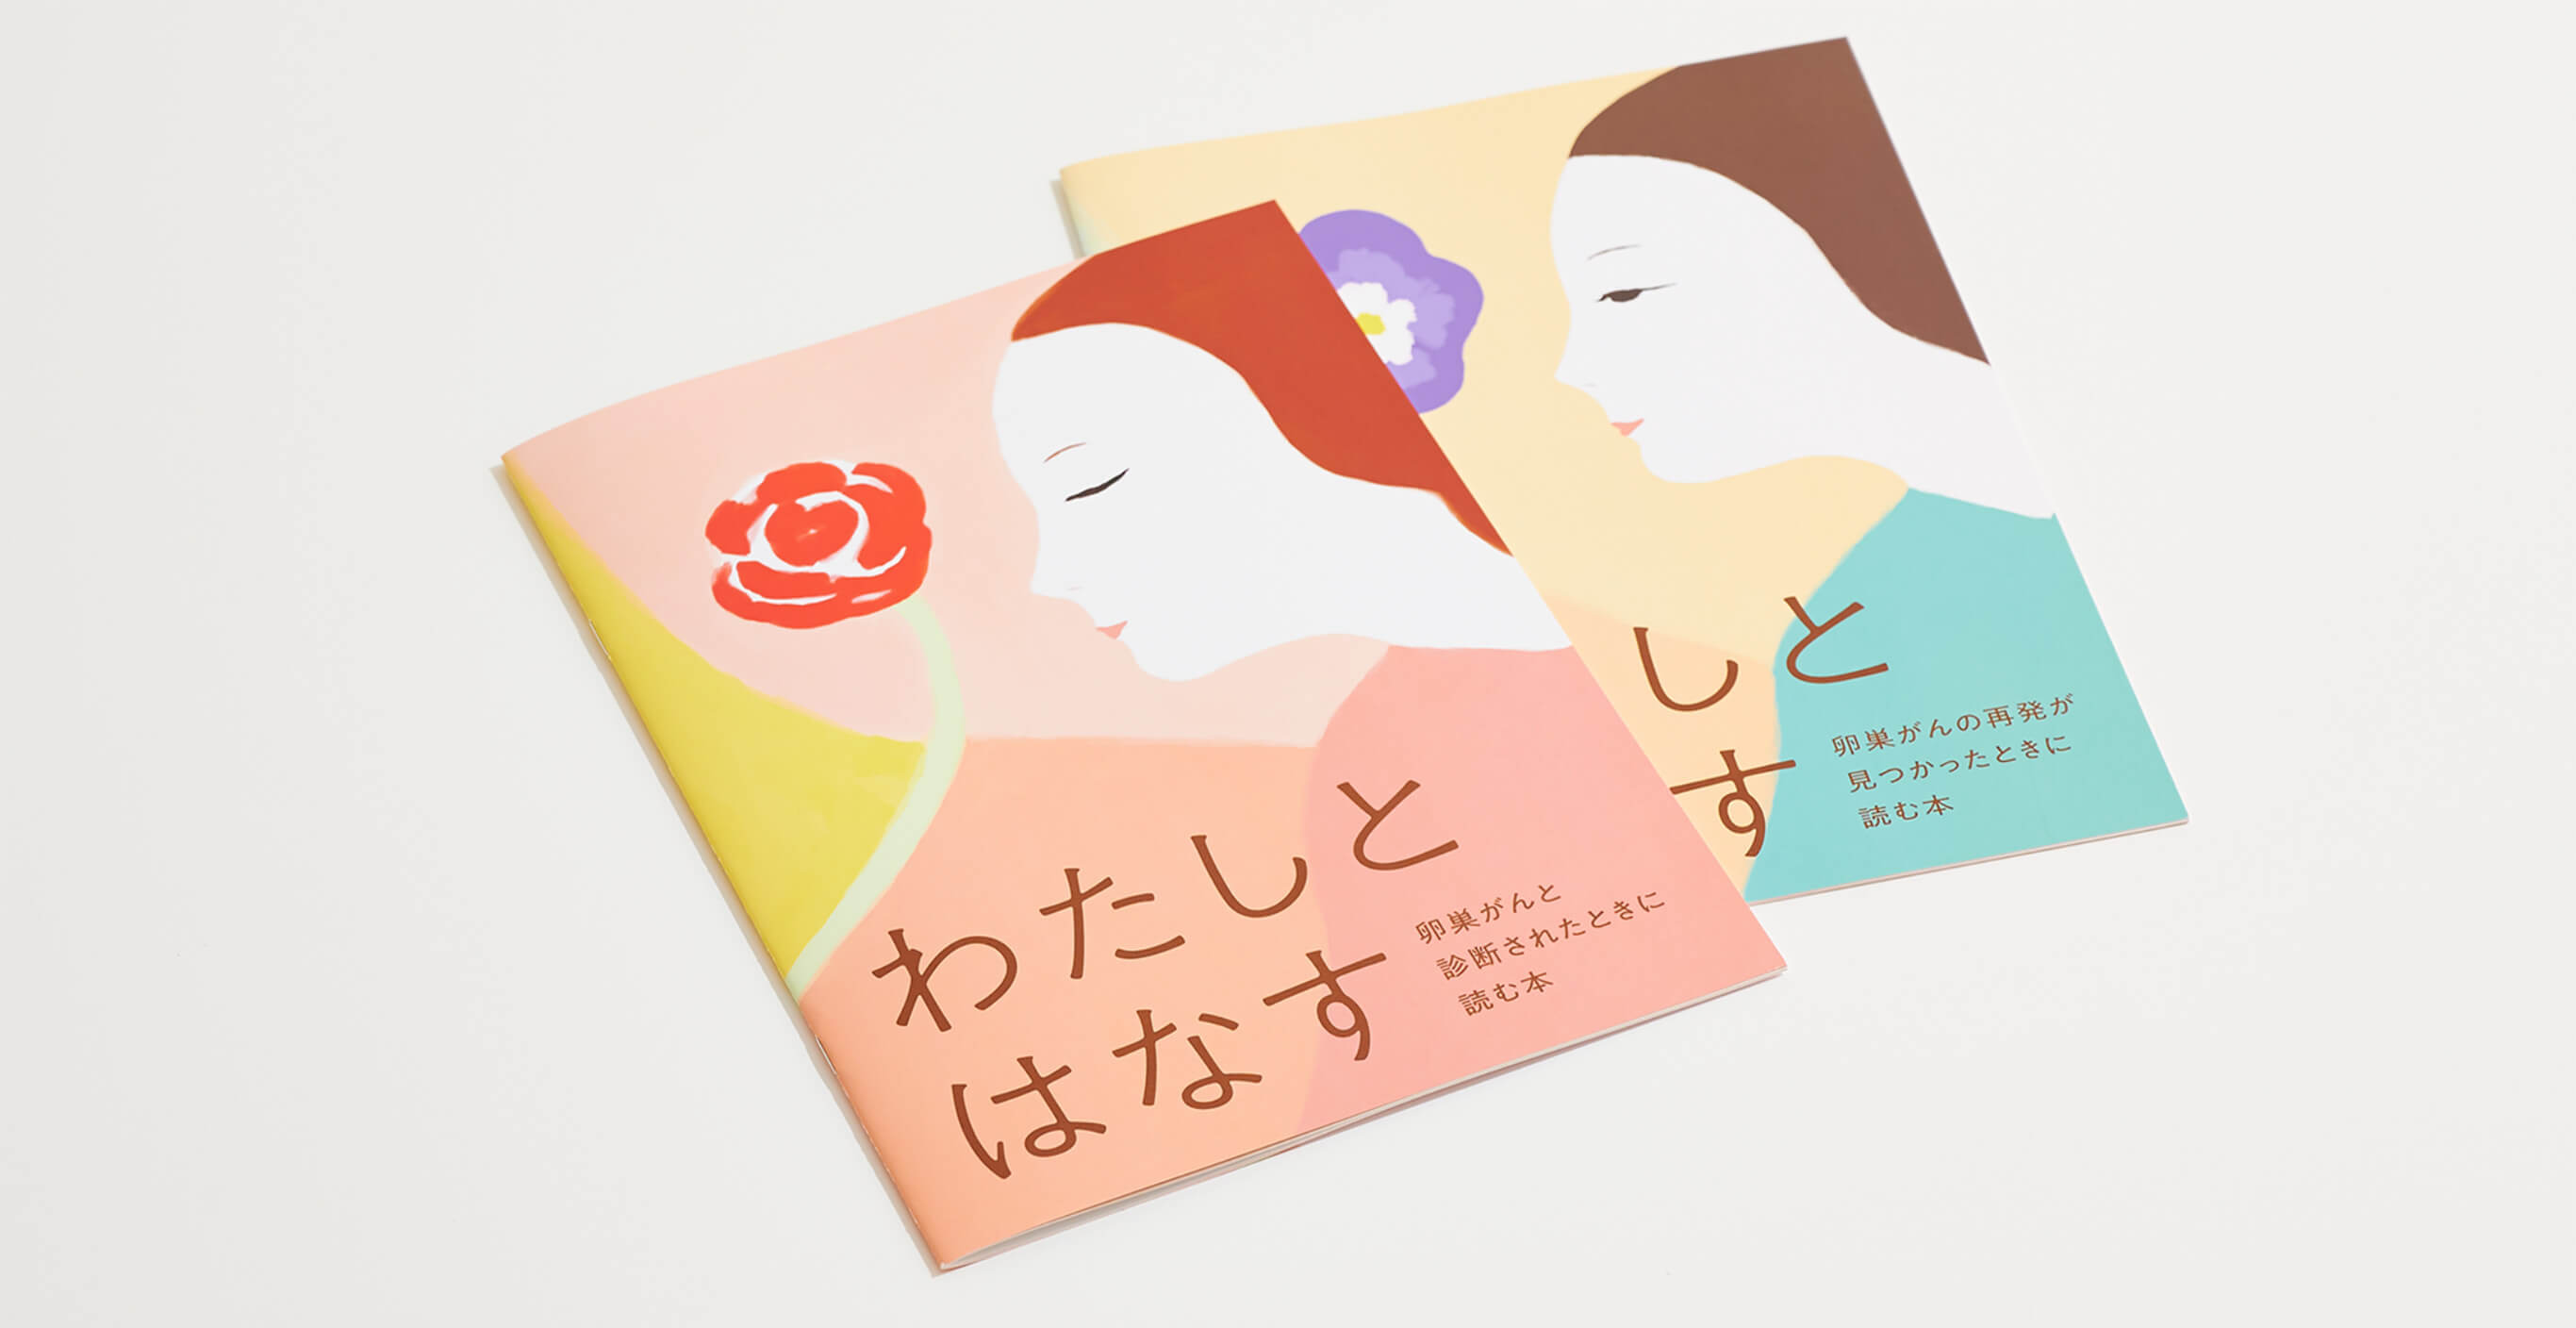 2つの冊子が並んでいる。表紙には「わたしとはなす」というタイトルが左下に大きく配置され、花と女性のイラストレーションが描かれている。